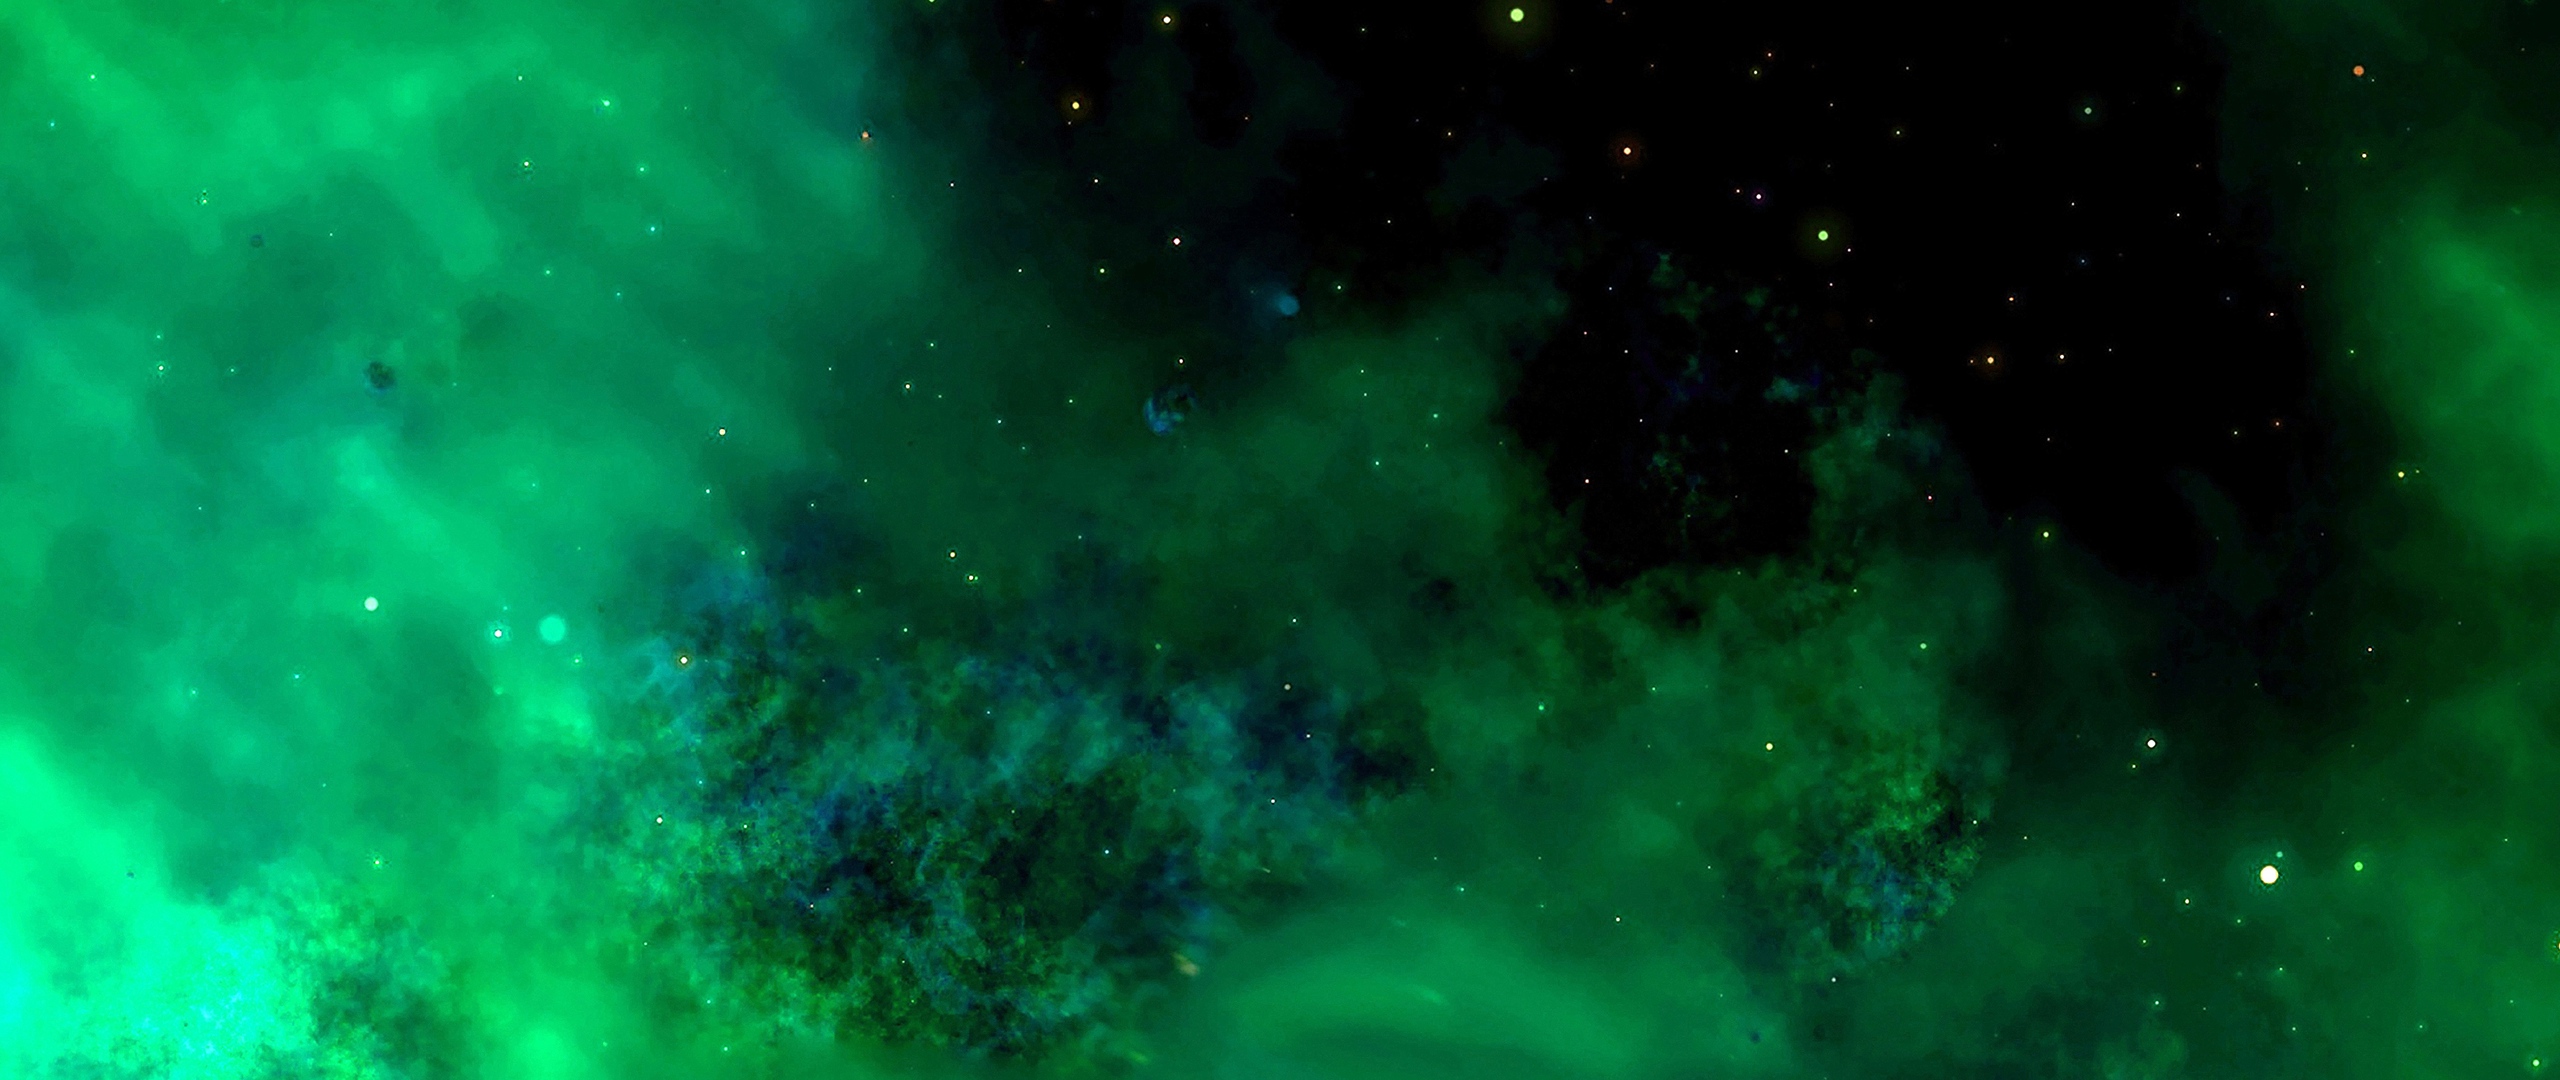 銀河の壁紙,緑,自然,空,星雲,天体